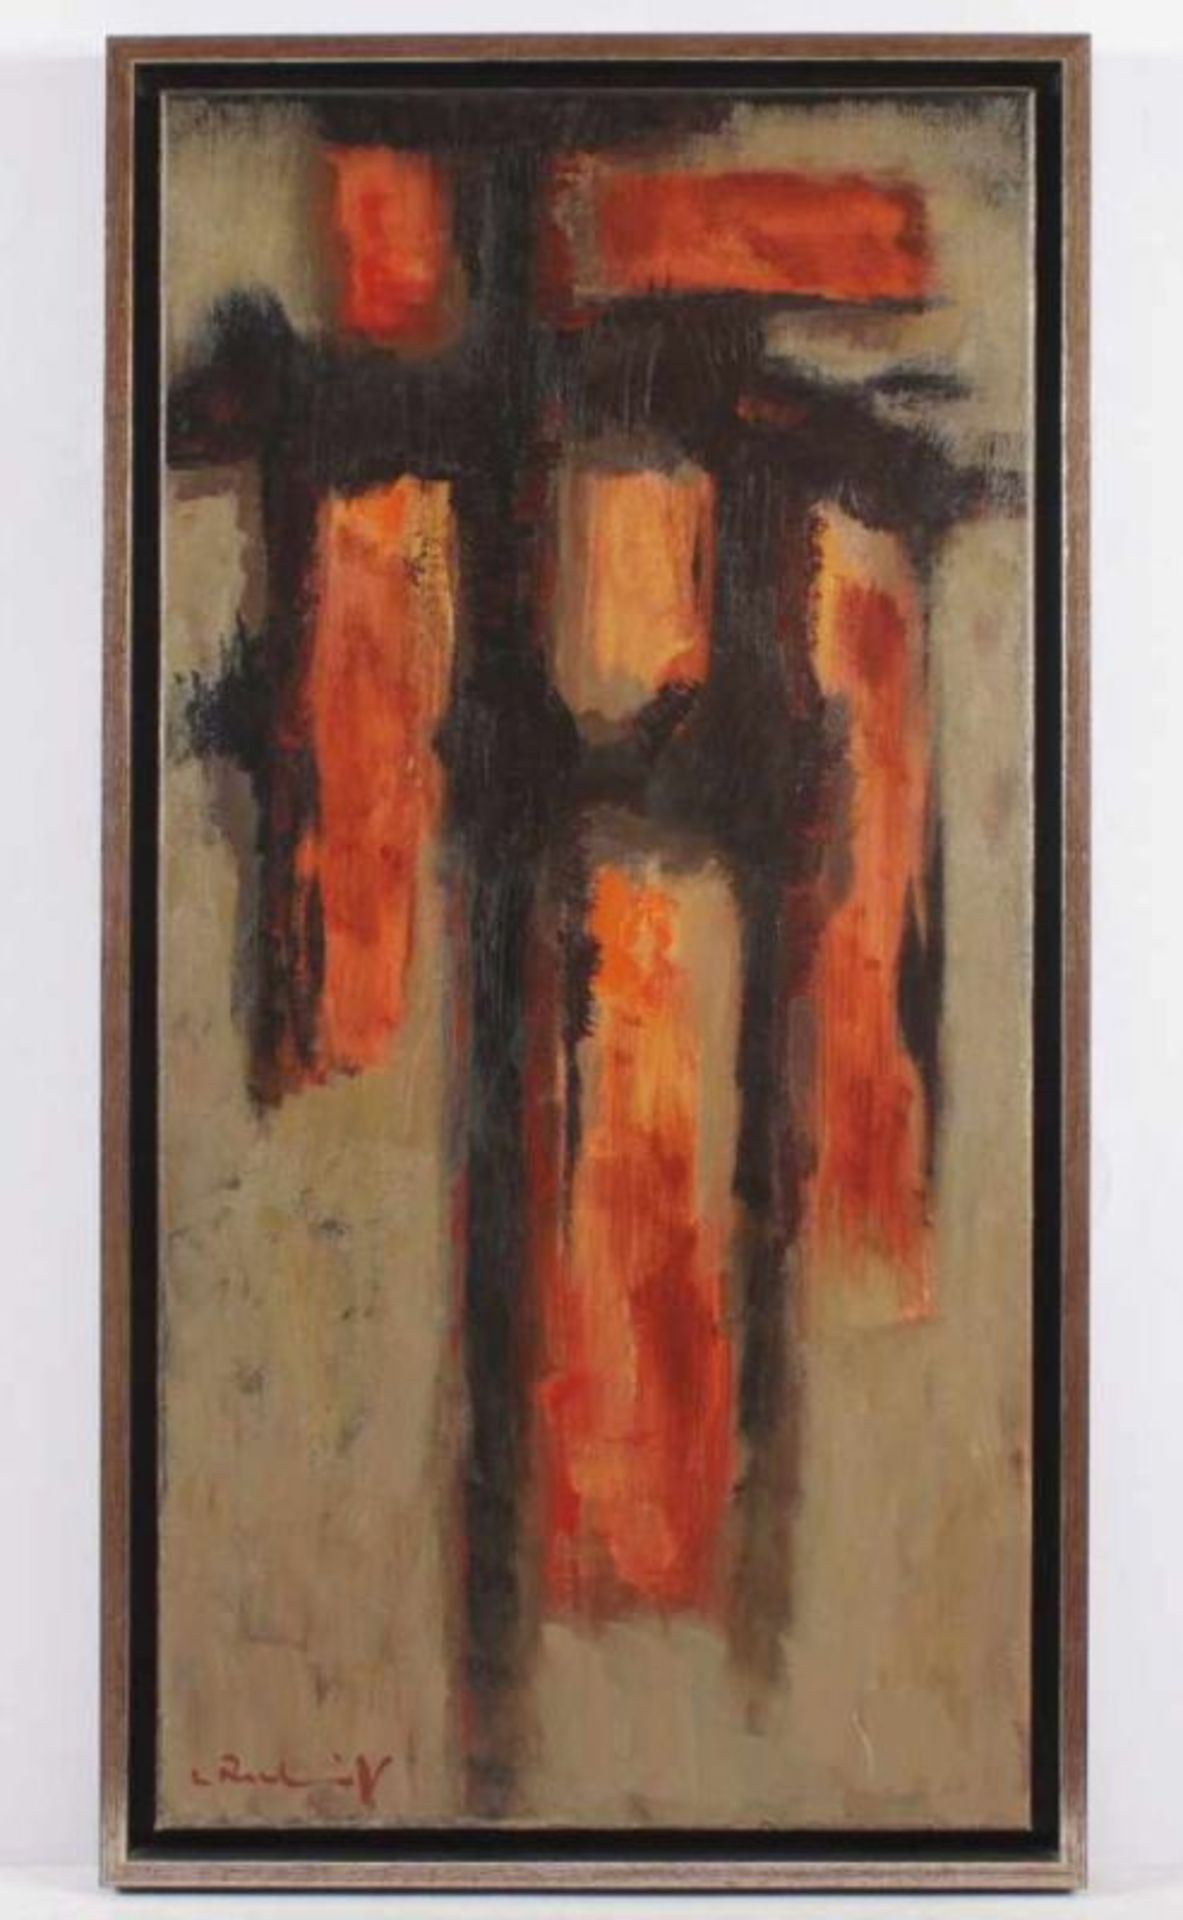 RECKEWITZ, Wilfried, "o.T.", Öl/Lwd., 79 x 40, unten links handsigniert, verso auf der Lwd.